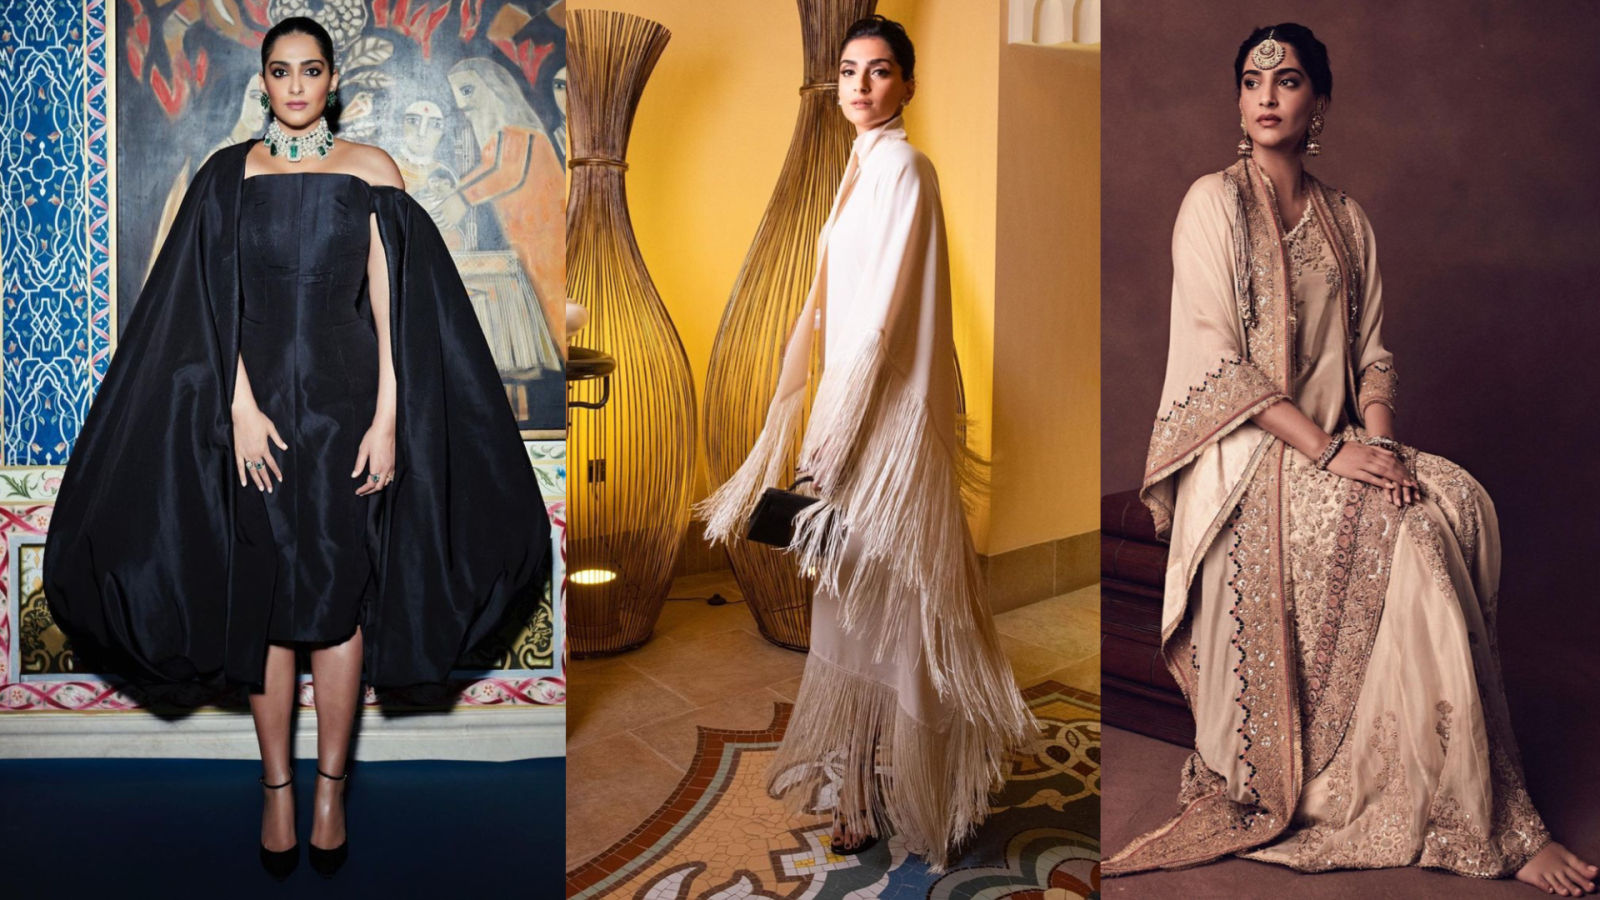 sonam-kapoor-in-amazing-gowns - FashionBuzzer.com